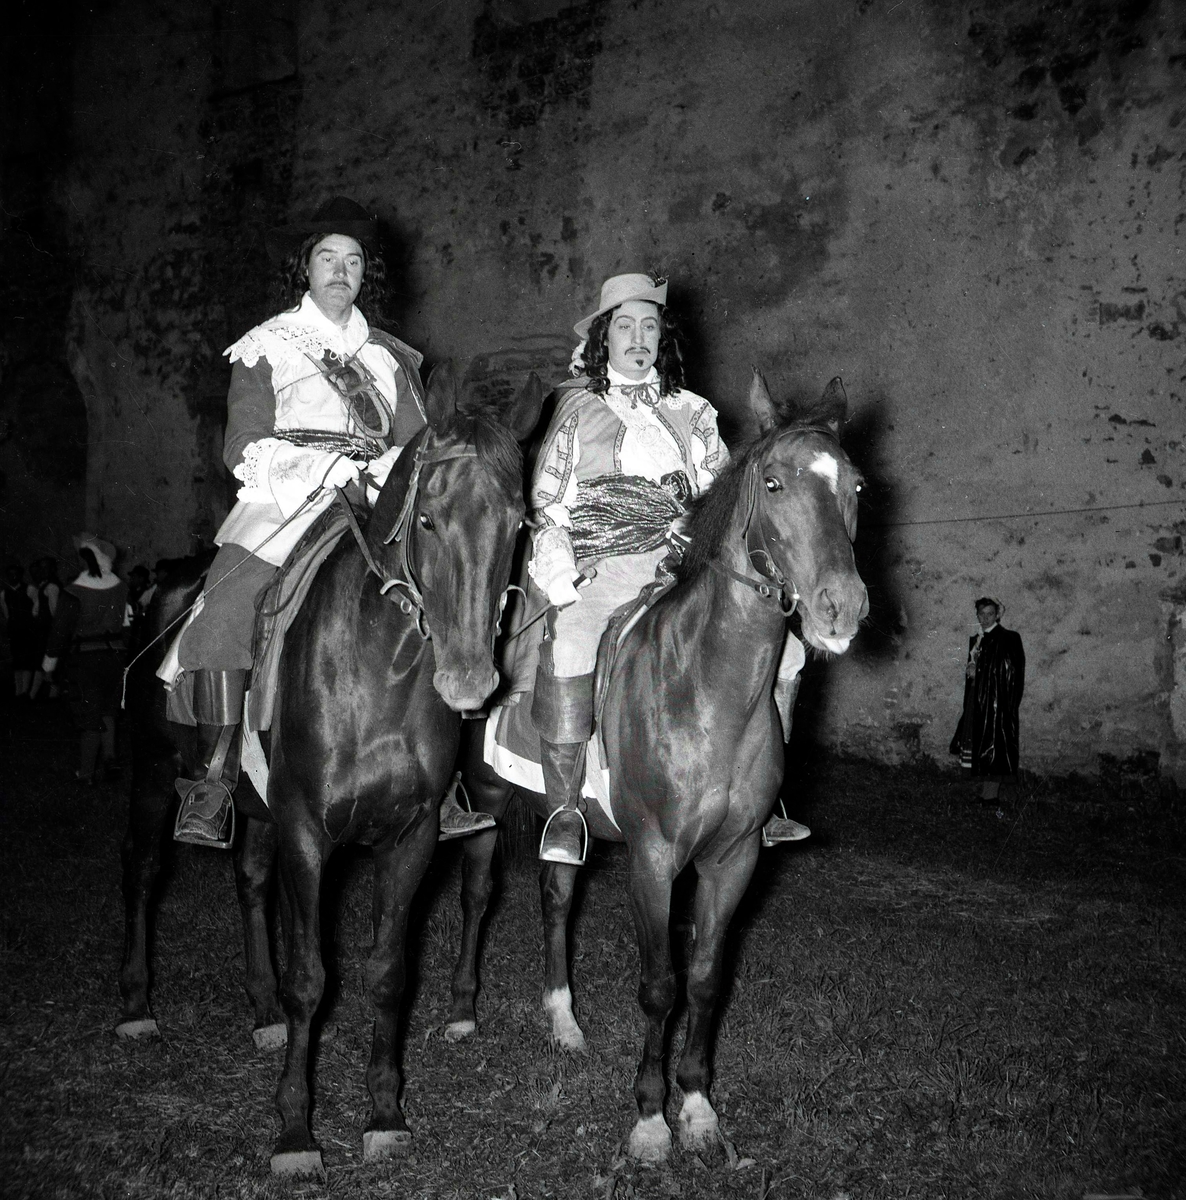 Ruinspelen, Borgholms slott.
Två herrar i teaterkostym som rider på varsin häst.